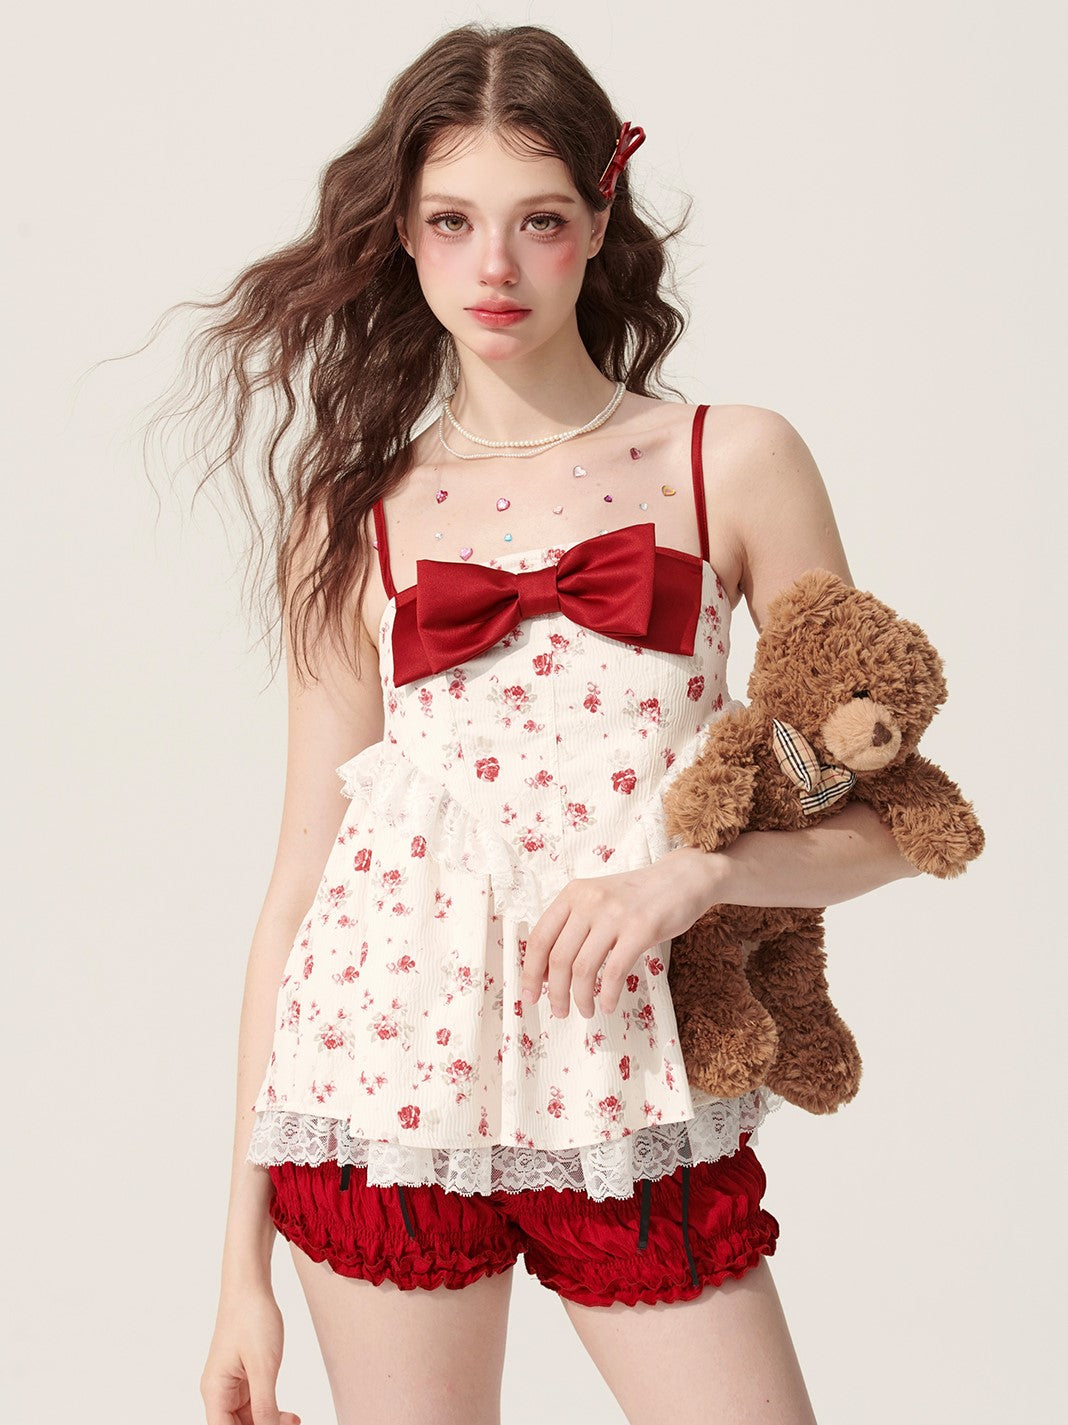 Rose Dream Doll Camisole DIA0154